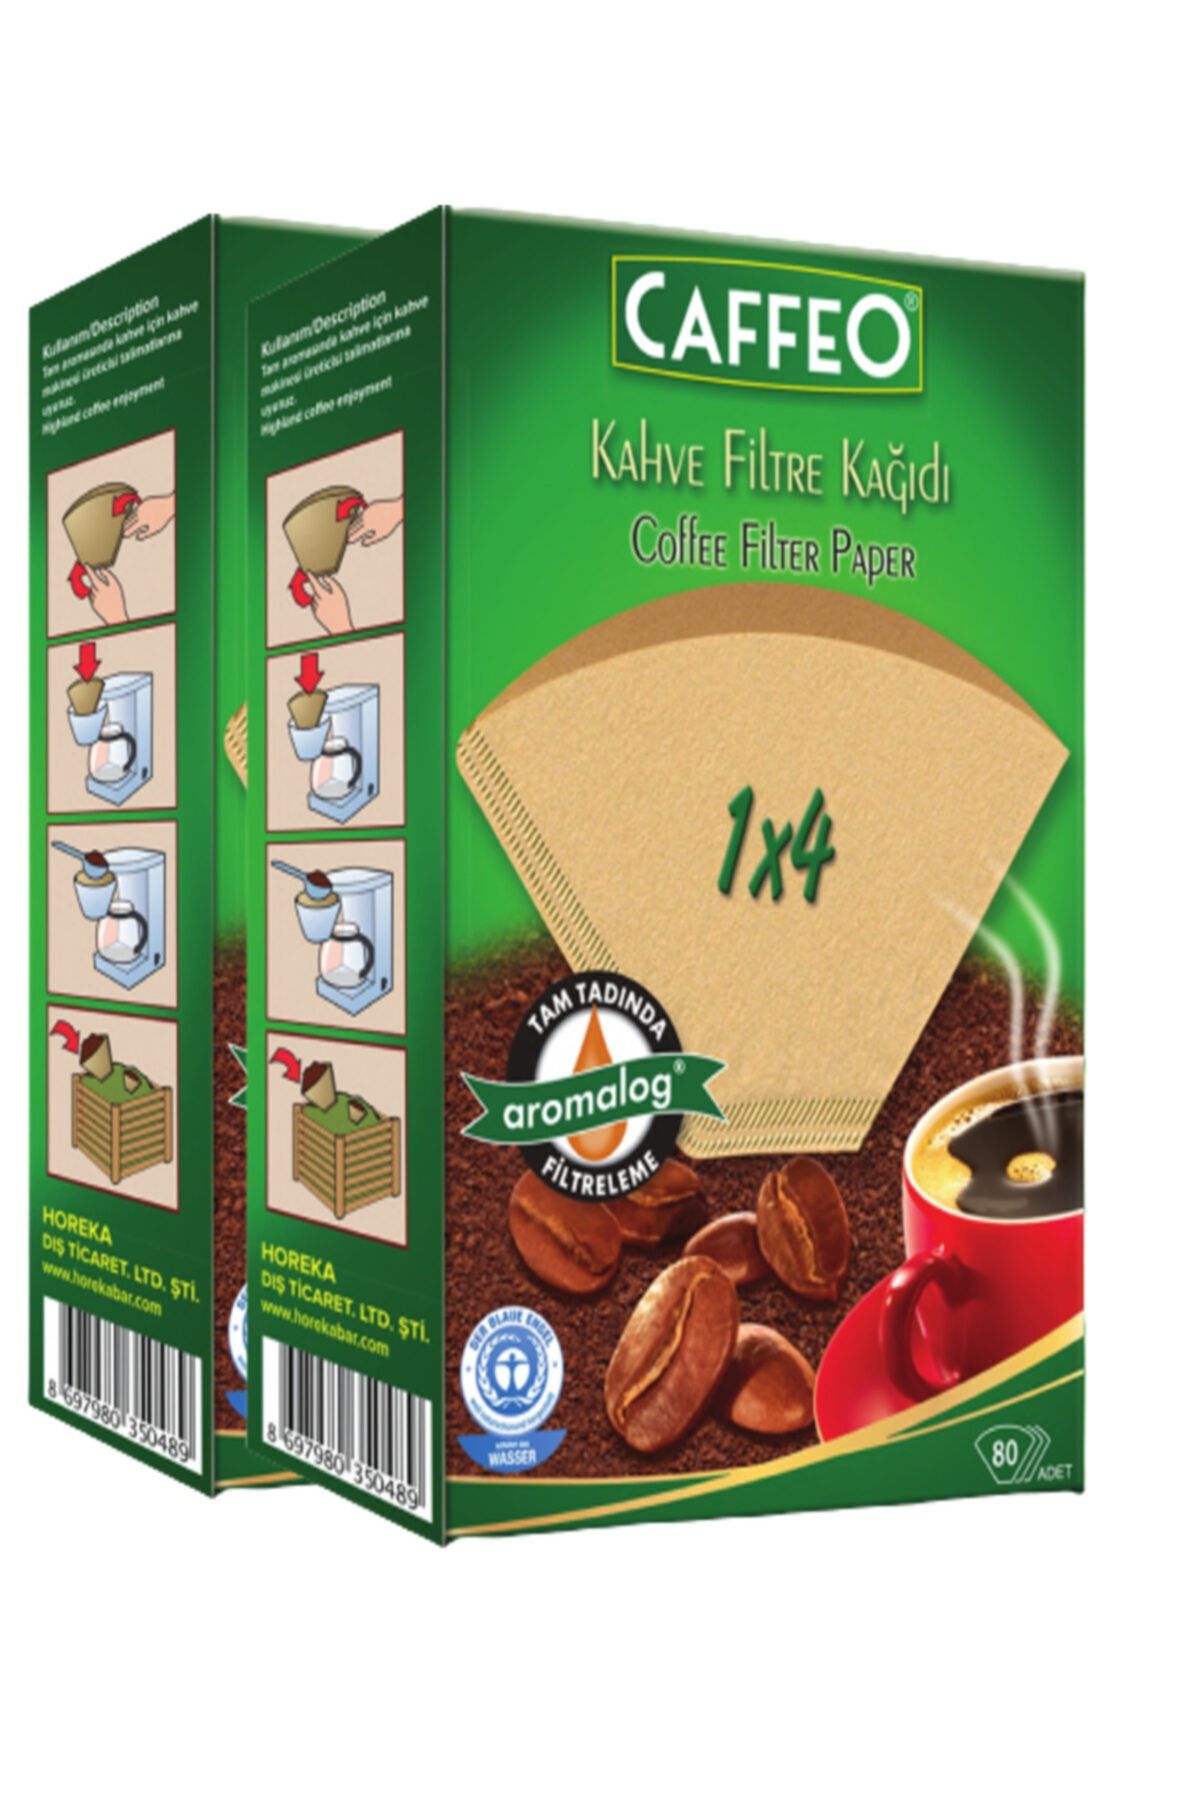 Caffeo Kahve Filtresi 1x4/80  2'li Paket  160 Filtre